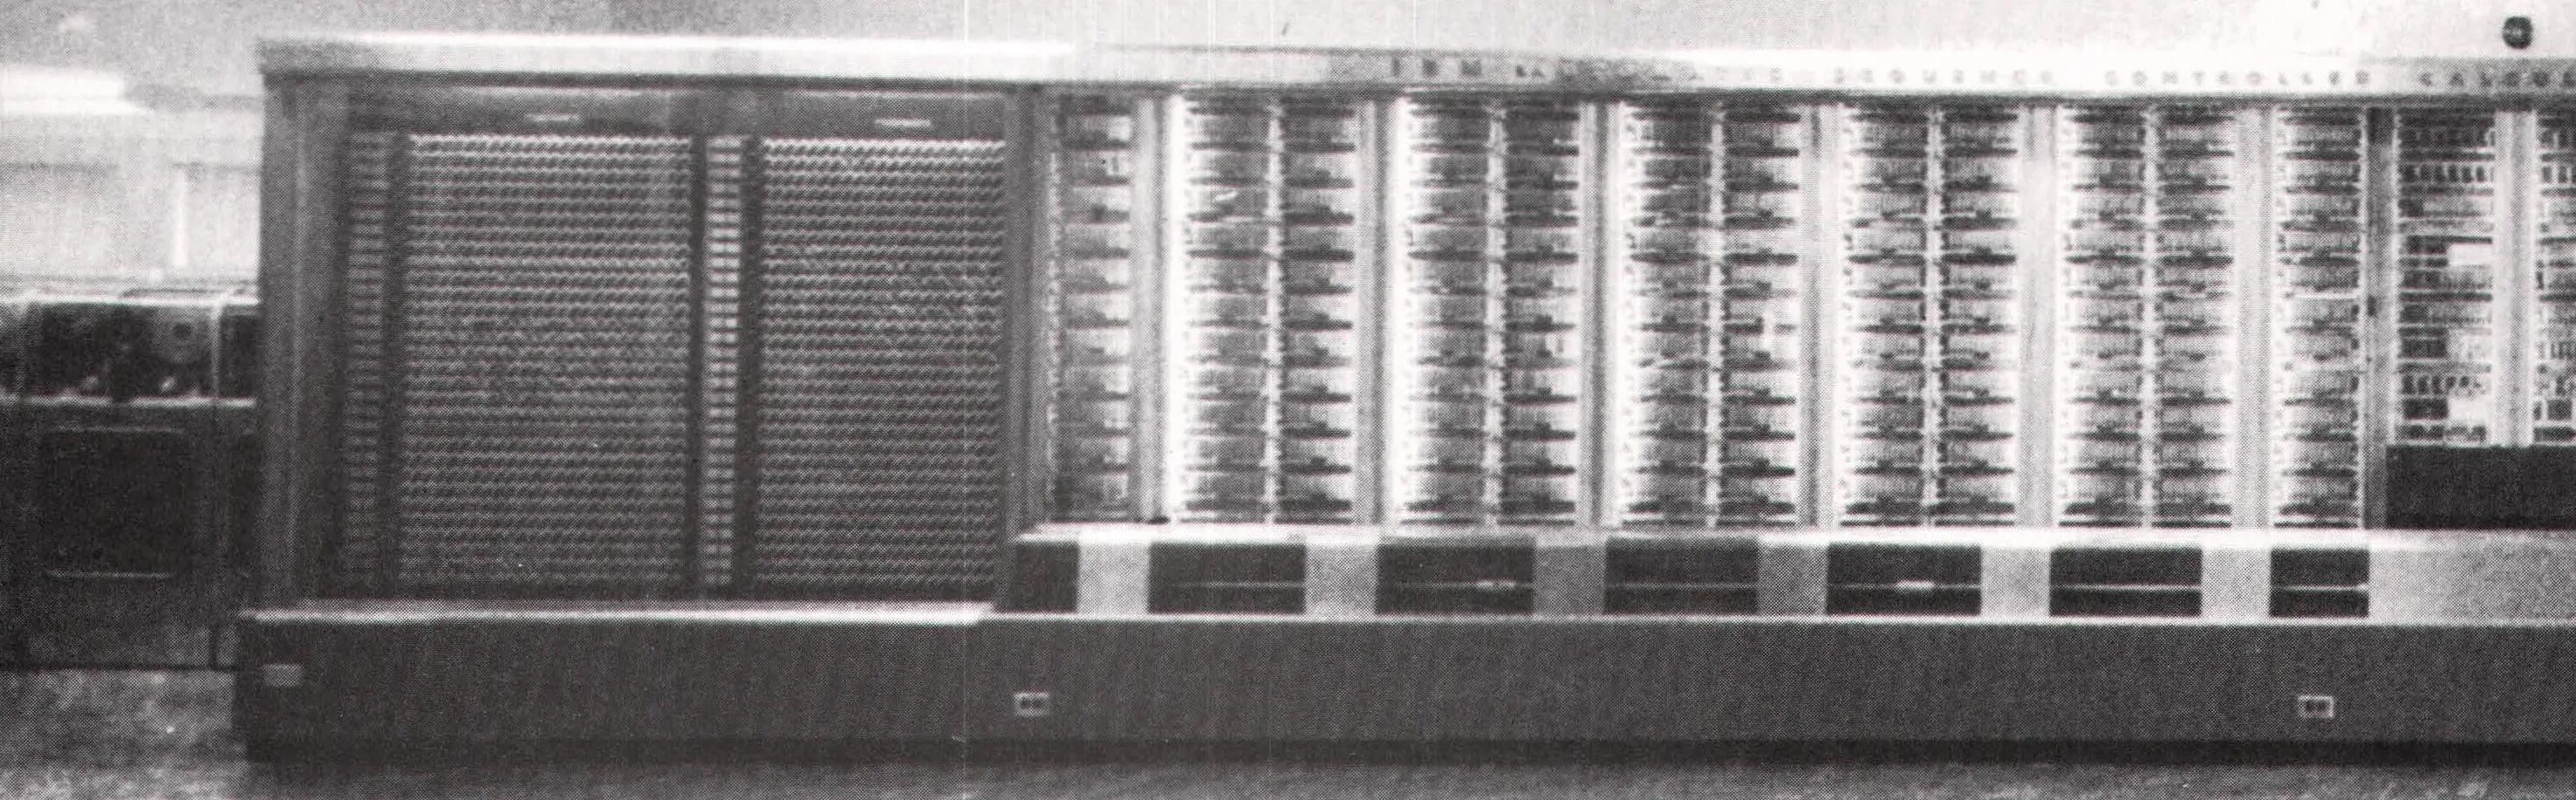 Память вычислительной машины. Говард Эйкен первый компьютер Mark 1.